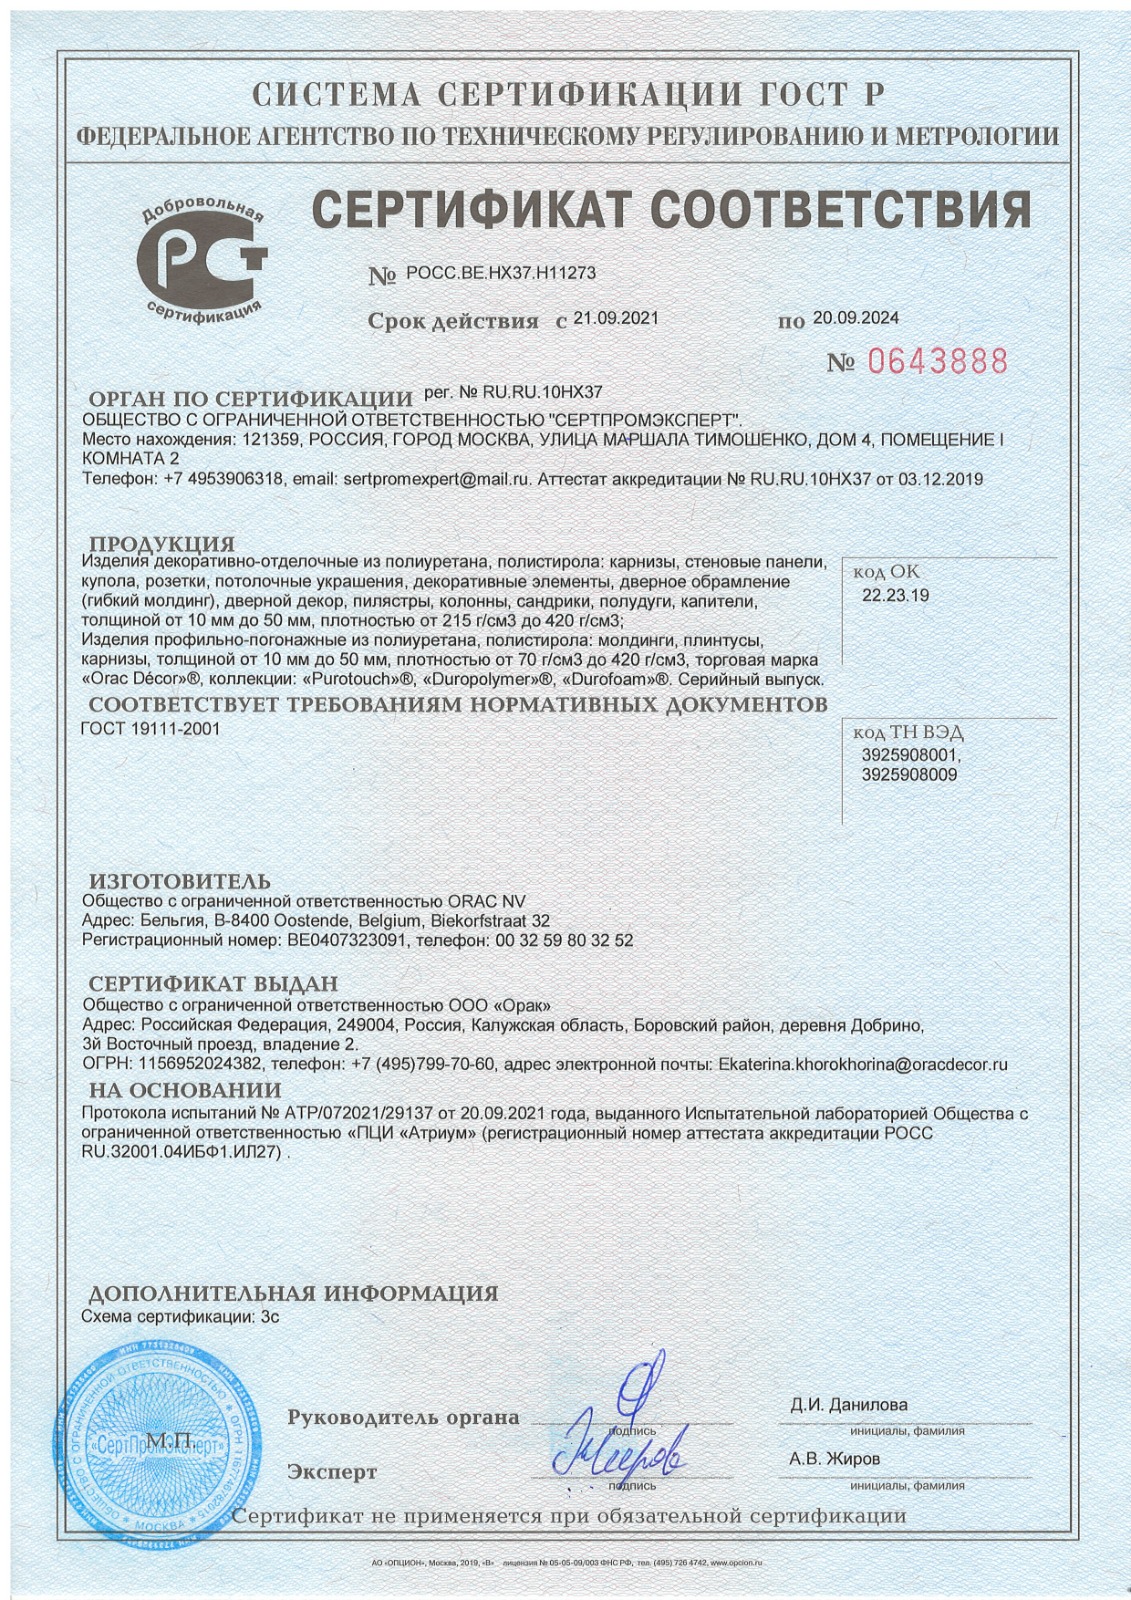 Сертификат соответствия ГОСТ Р до 20.09.2024г